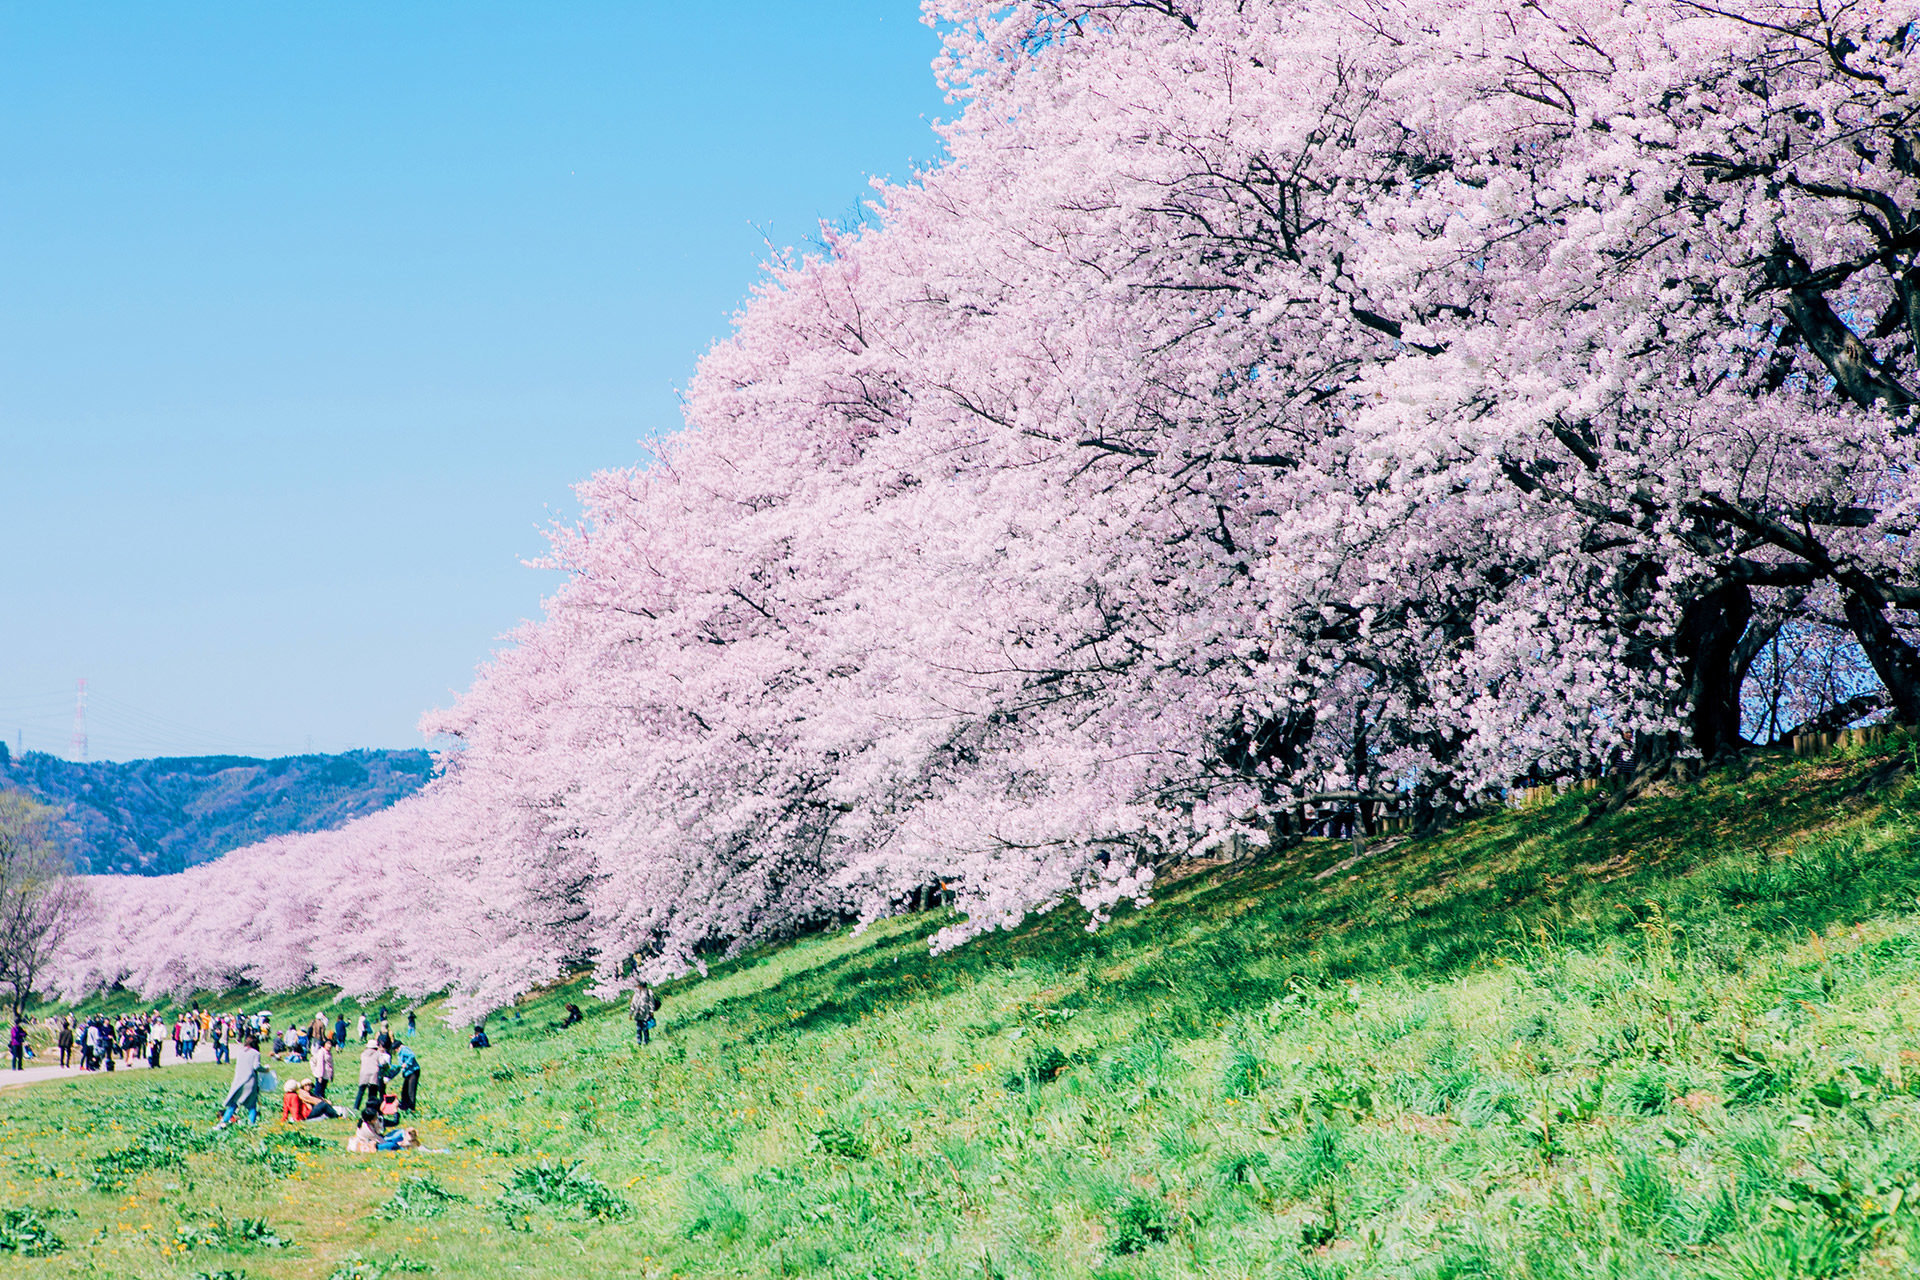 今週末 ピクニックをしながら京都の桜を満喫したい と思っている方におすすめスポットをご紹介 Caedekyoto カエデ京都 紅葉と伝統美を引き継ぐバッグ